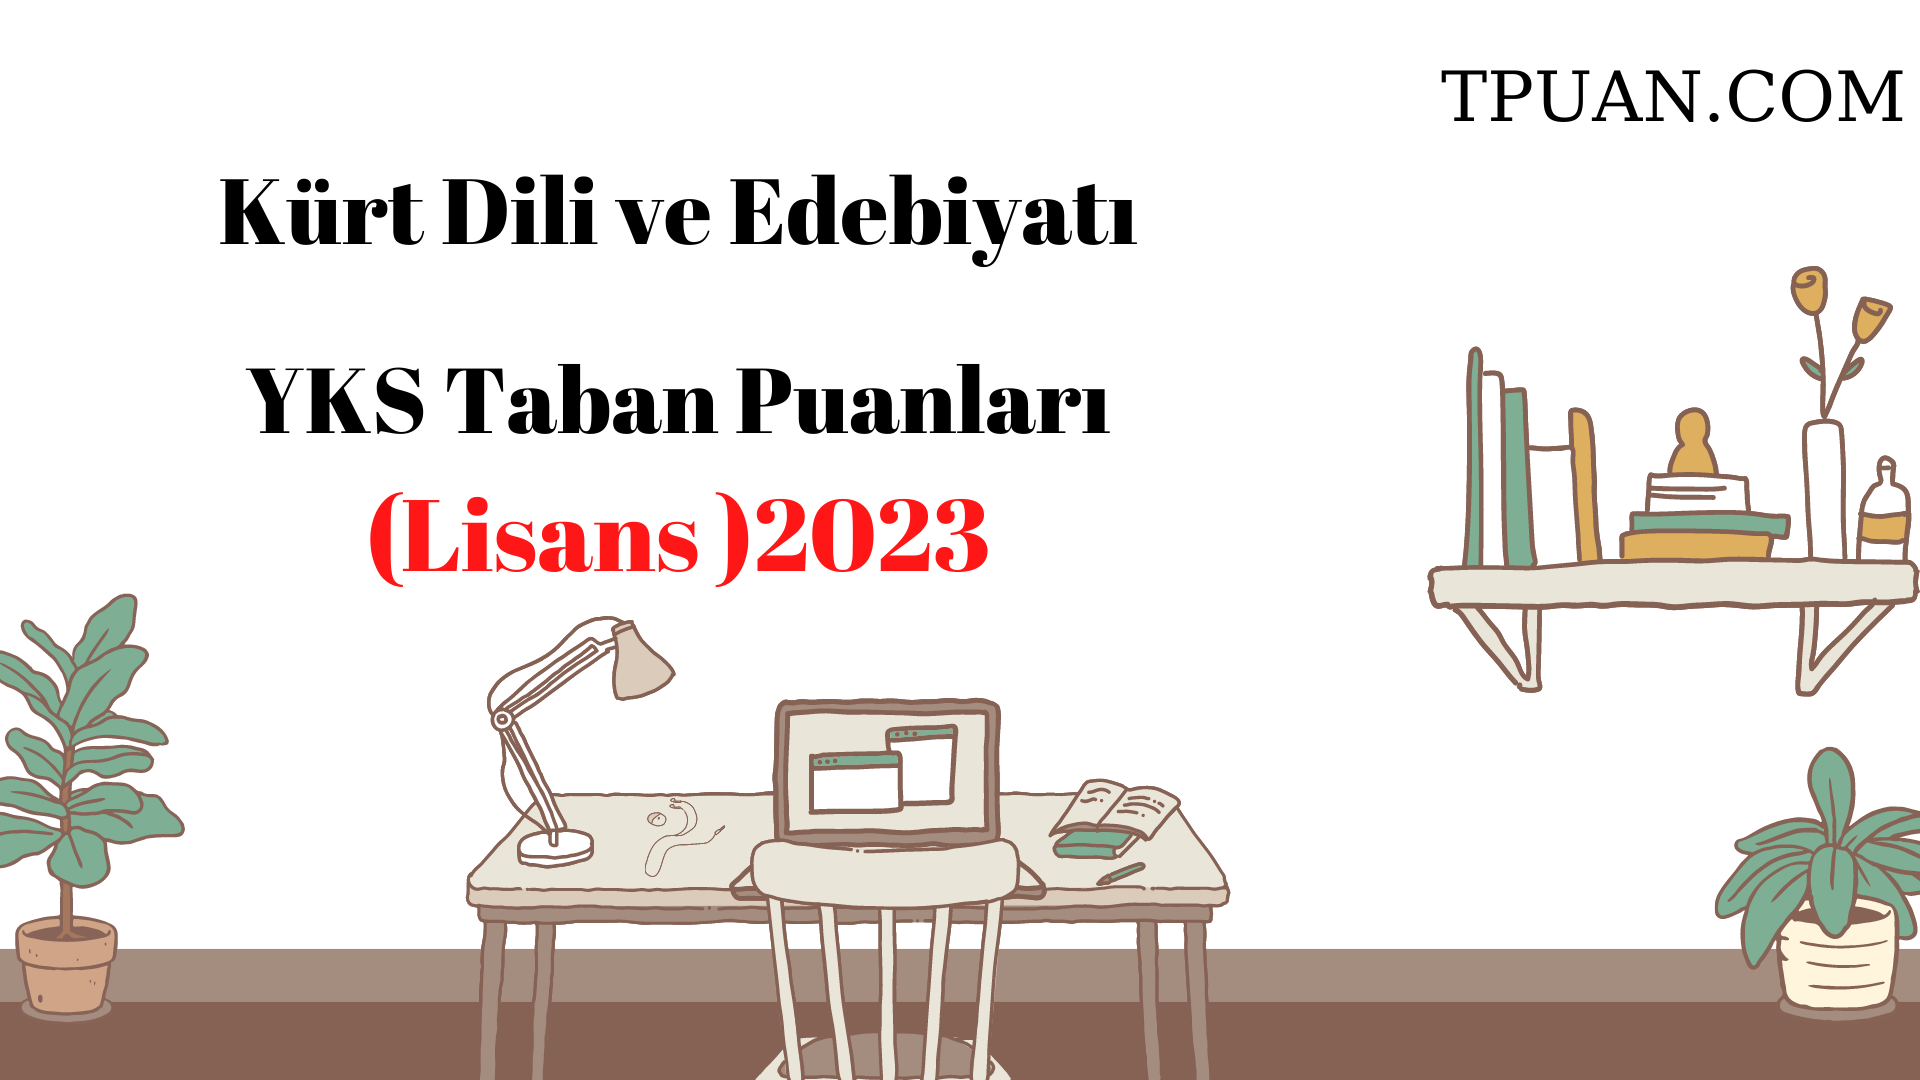  Kürt Dili ve Edebiyatı Bölümü YKS Taban Puanları (4 Yıllık) 2023